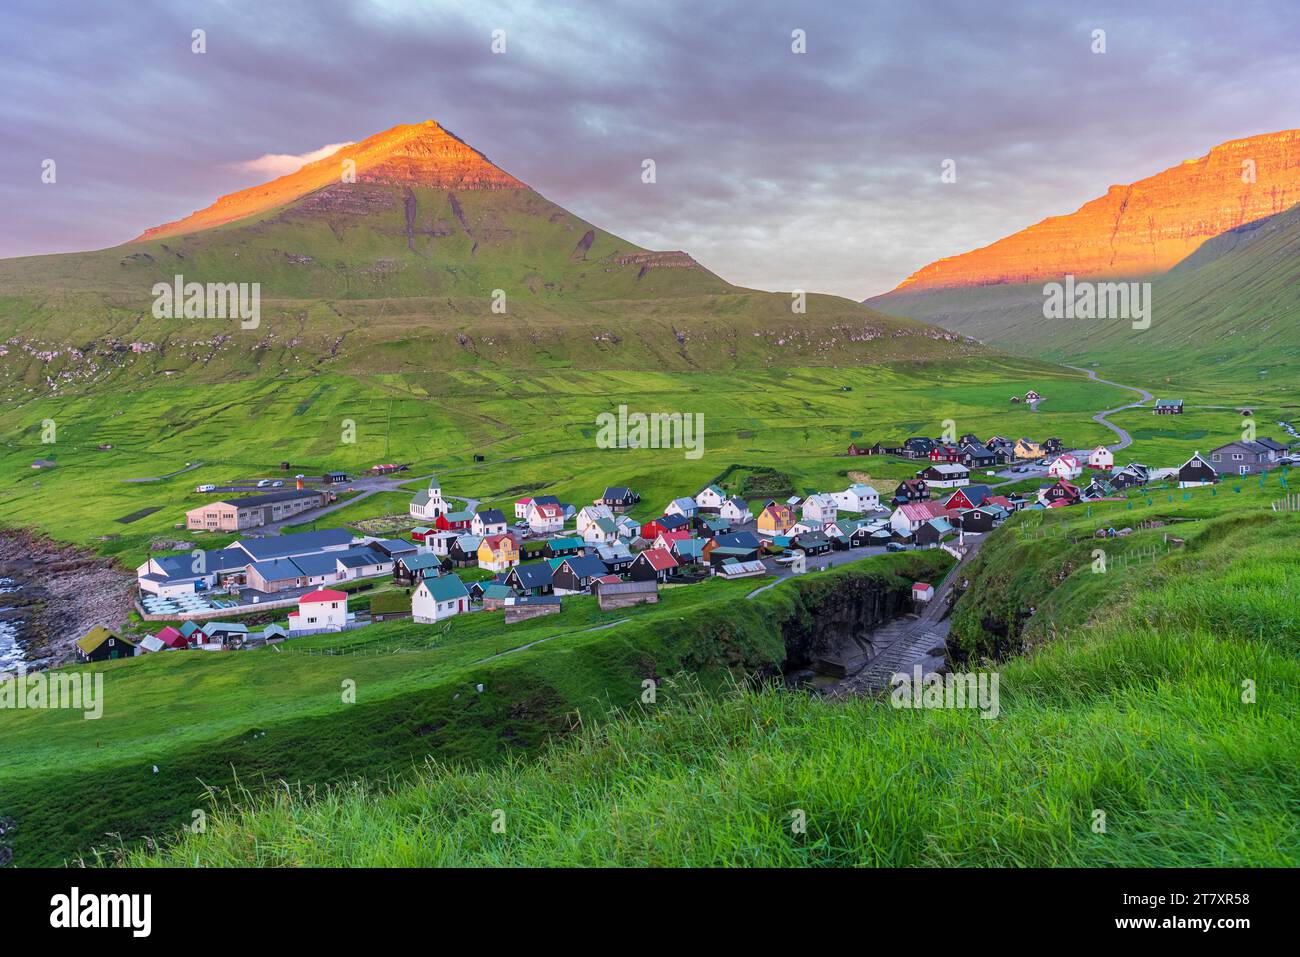 Case colorate del villaggio di Gjogv con i monti illuminati dal sole, vista dell'alba, isola di Eysturoy, isole Faroe, Danimarca, Europa Foto Stock